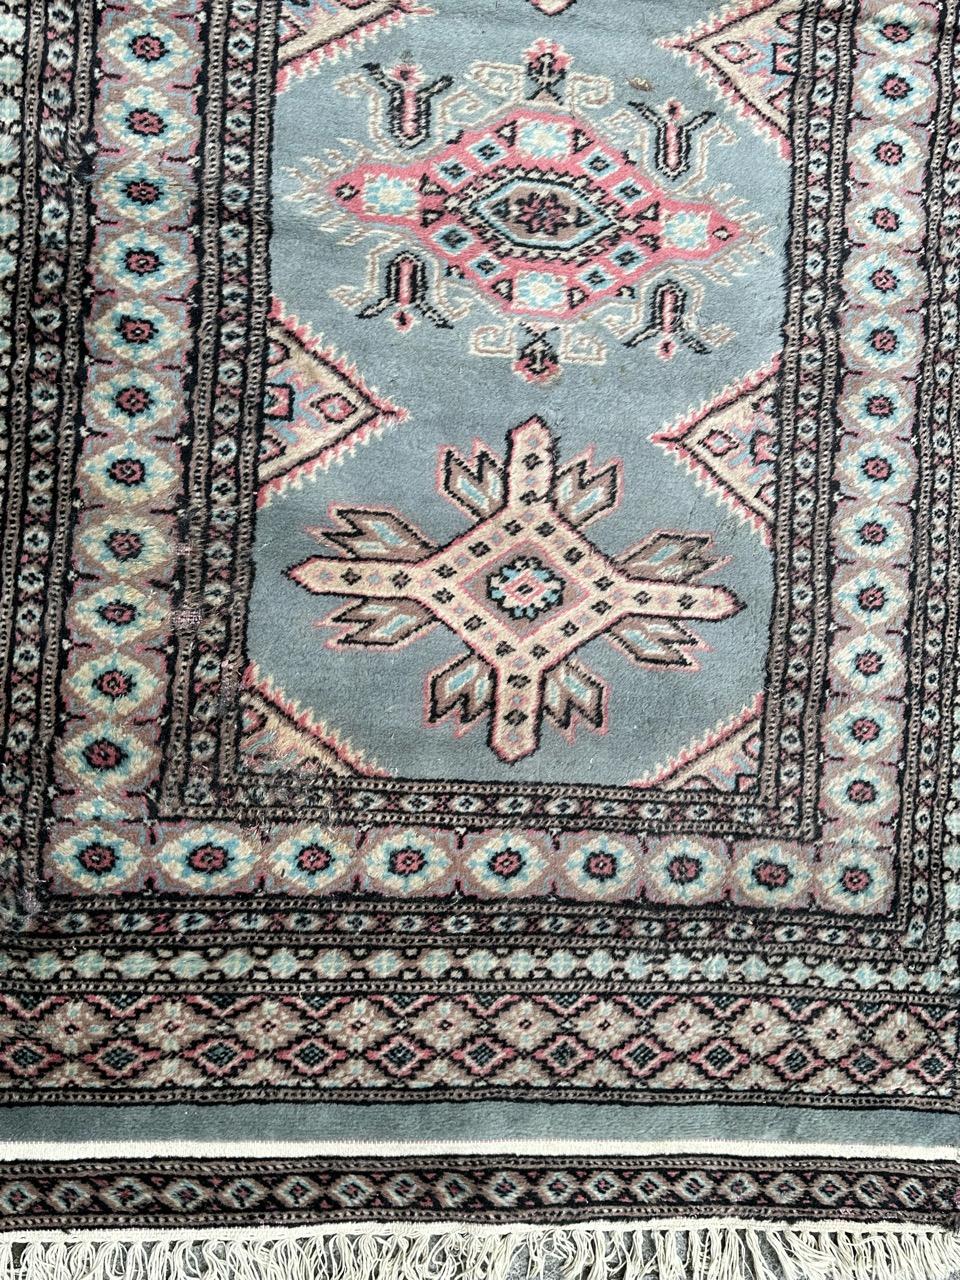 Schöner pakistanischer Teppich aus der Mitte des Jahrhunderts mit schönem turkmenischem Design und schönen Farben in blau, rosa, grau und schwarz, komplett handgeknüpft mit Wolle auf Baumwollbasis 

✨✨✨
